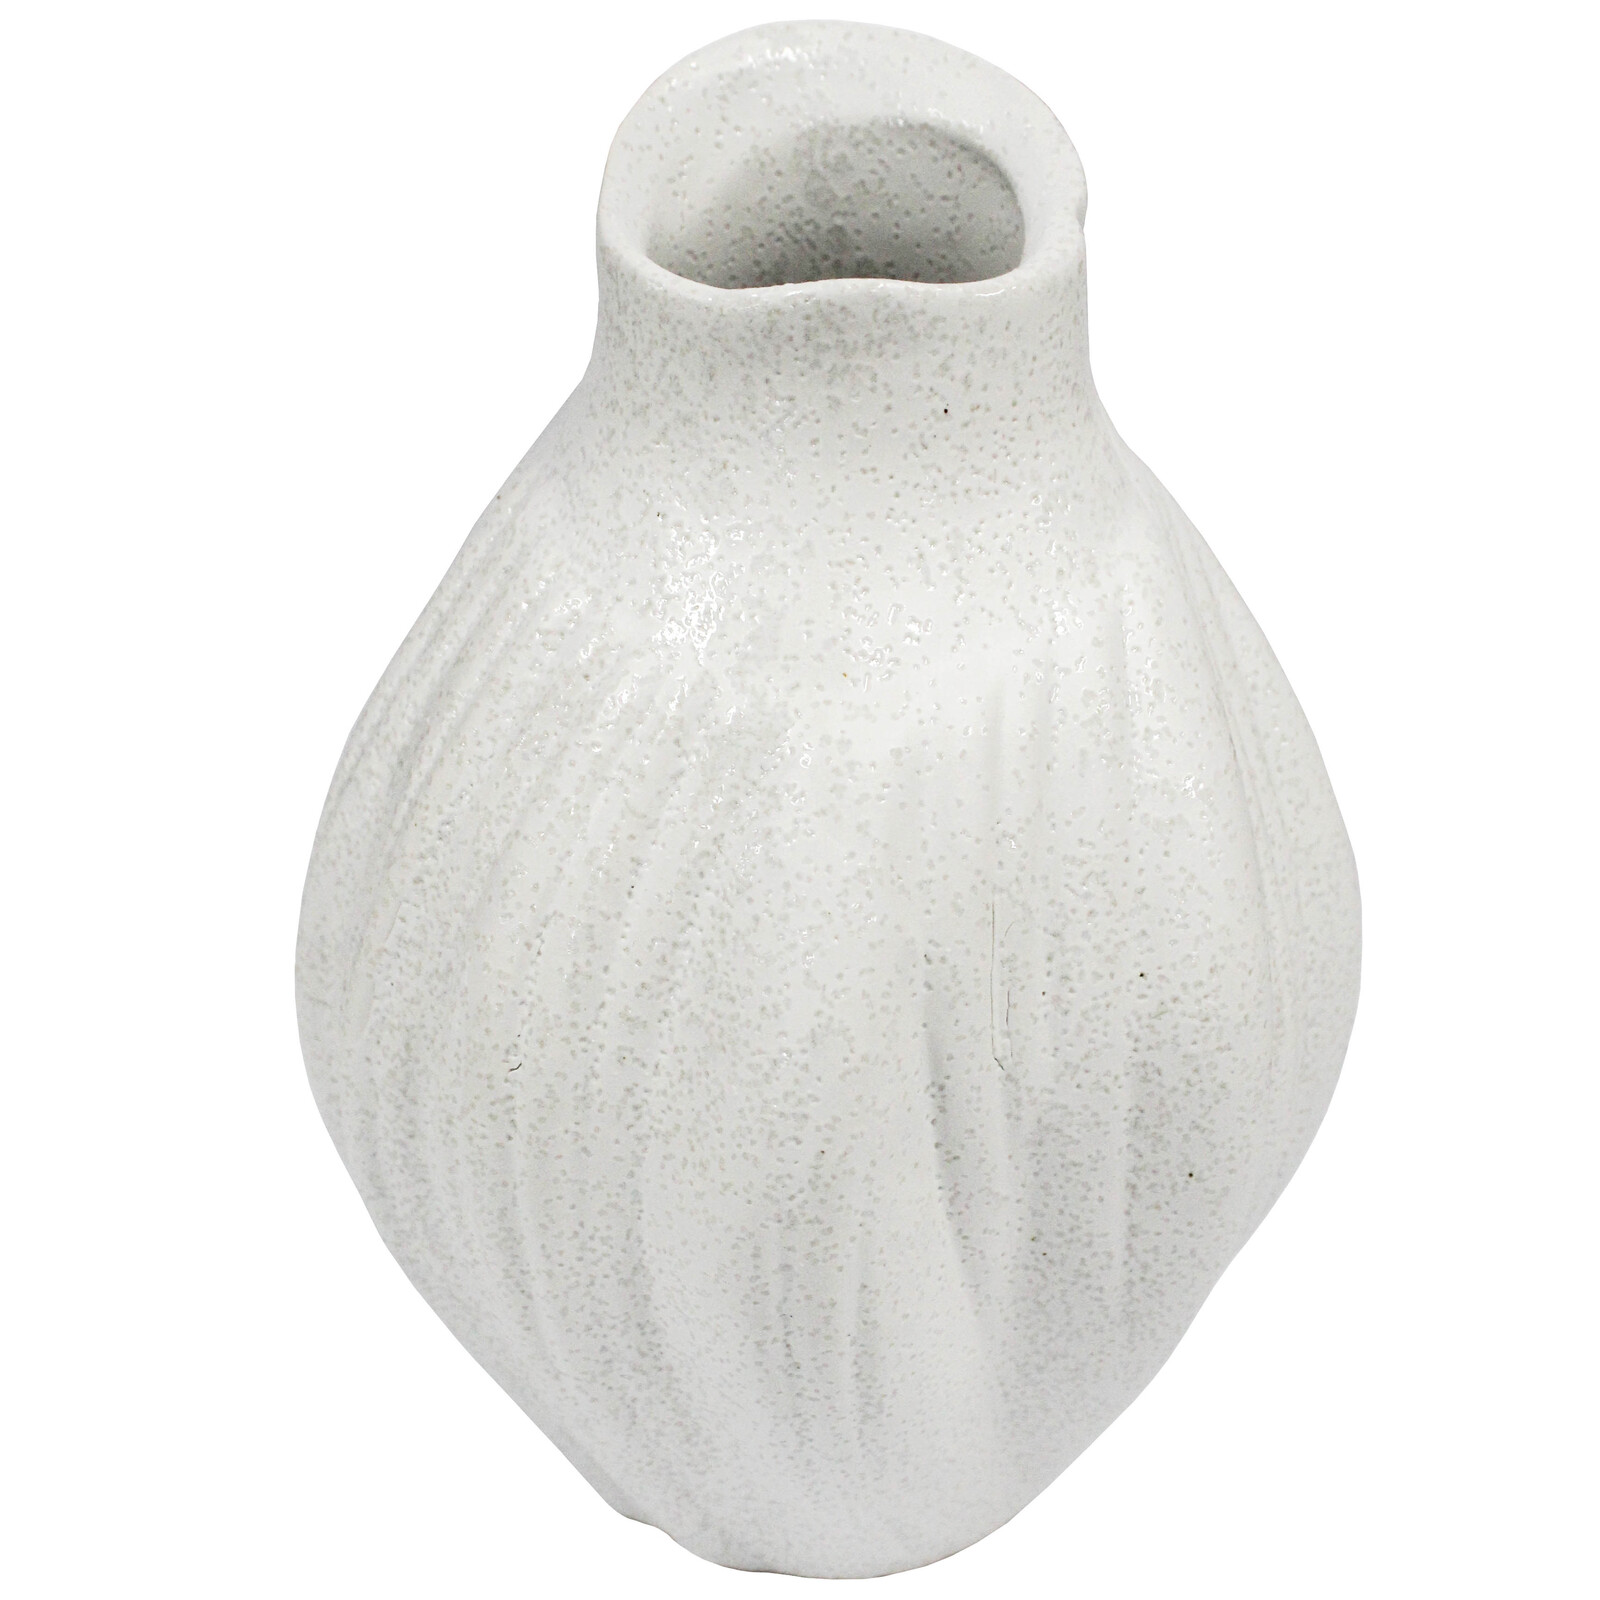 Petite Vase A White 